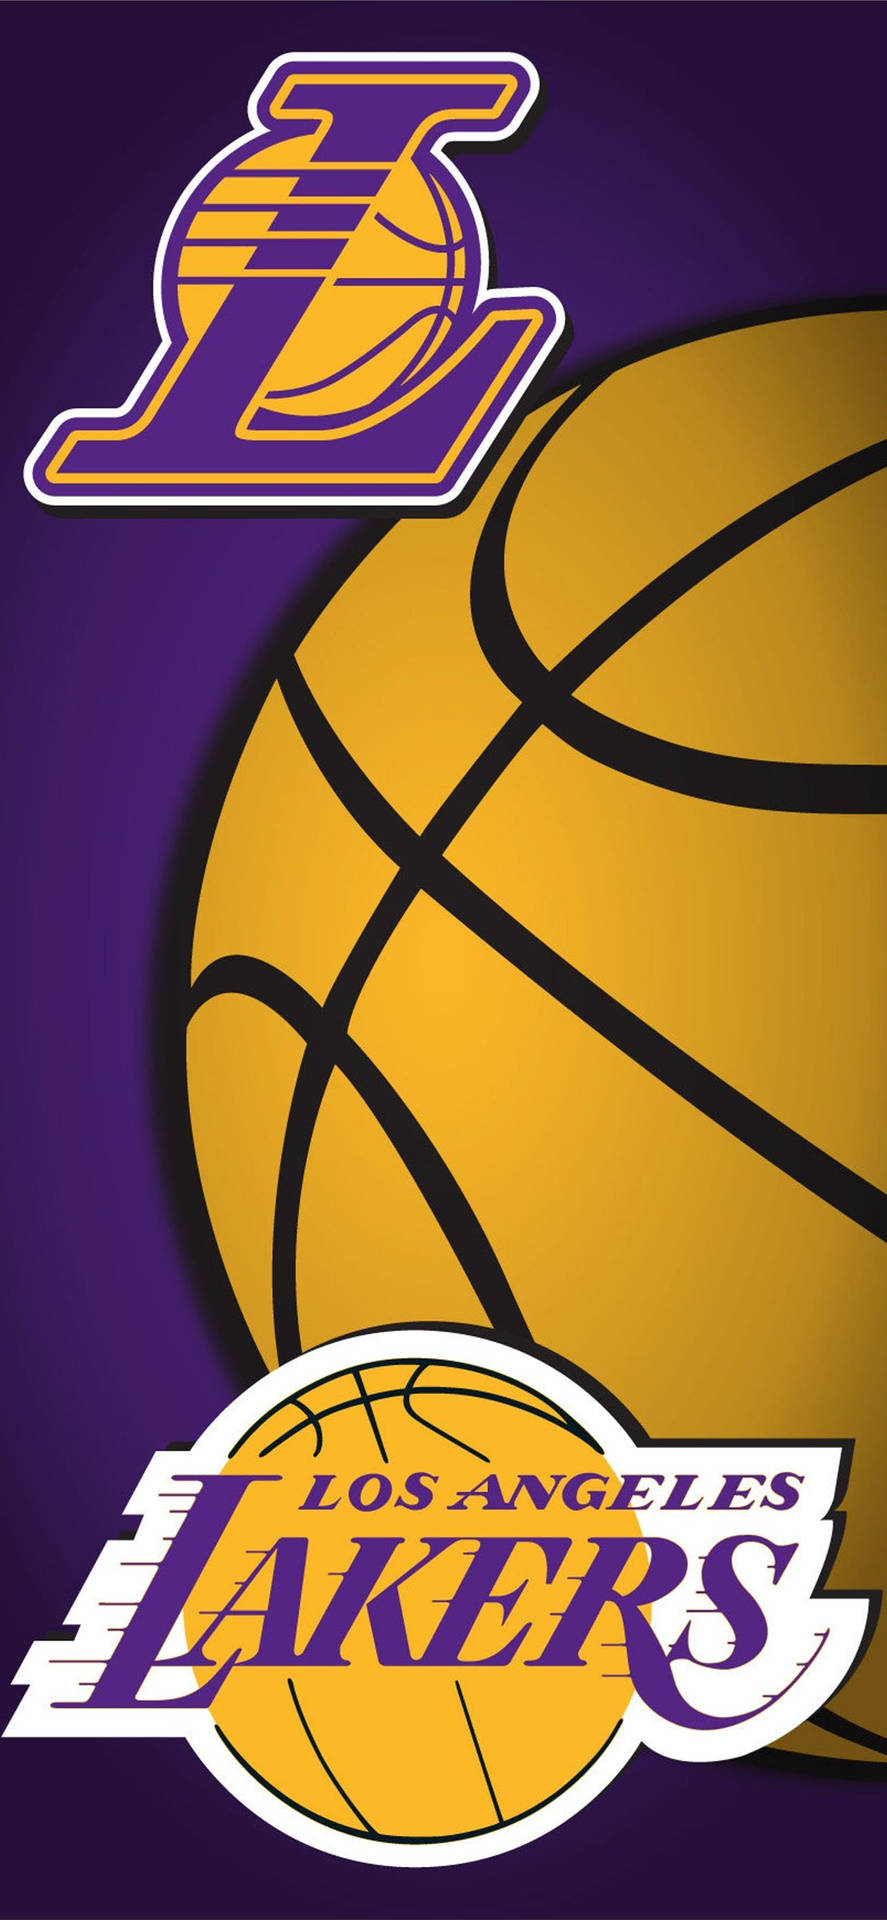 Vis din støtte for Lakers med din Iphone! Wallpaper